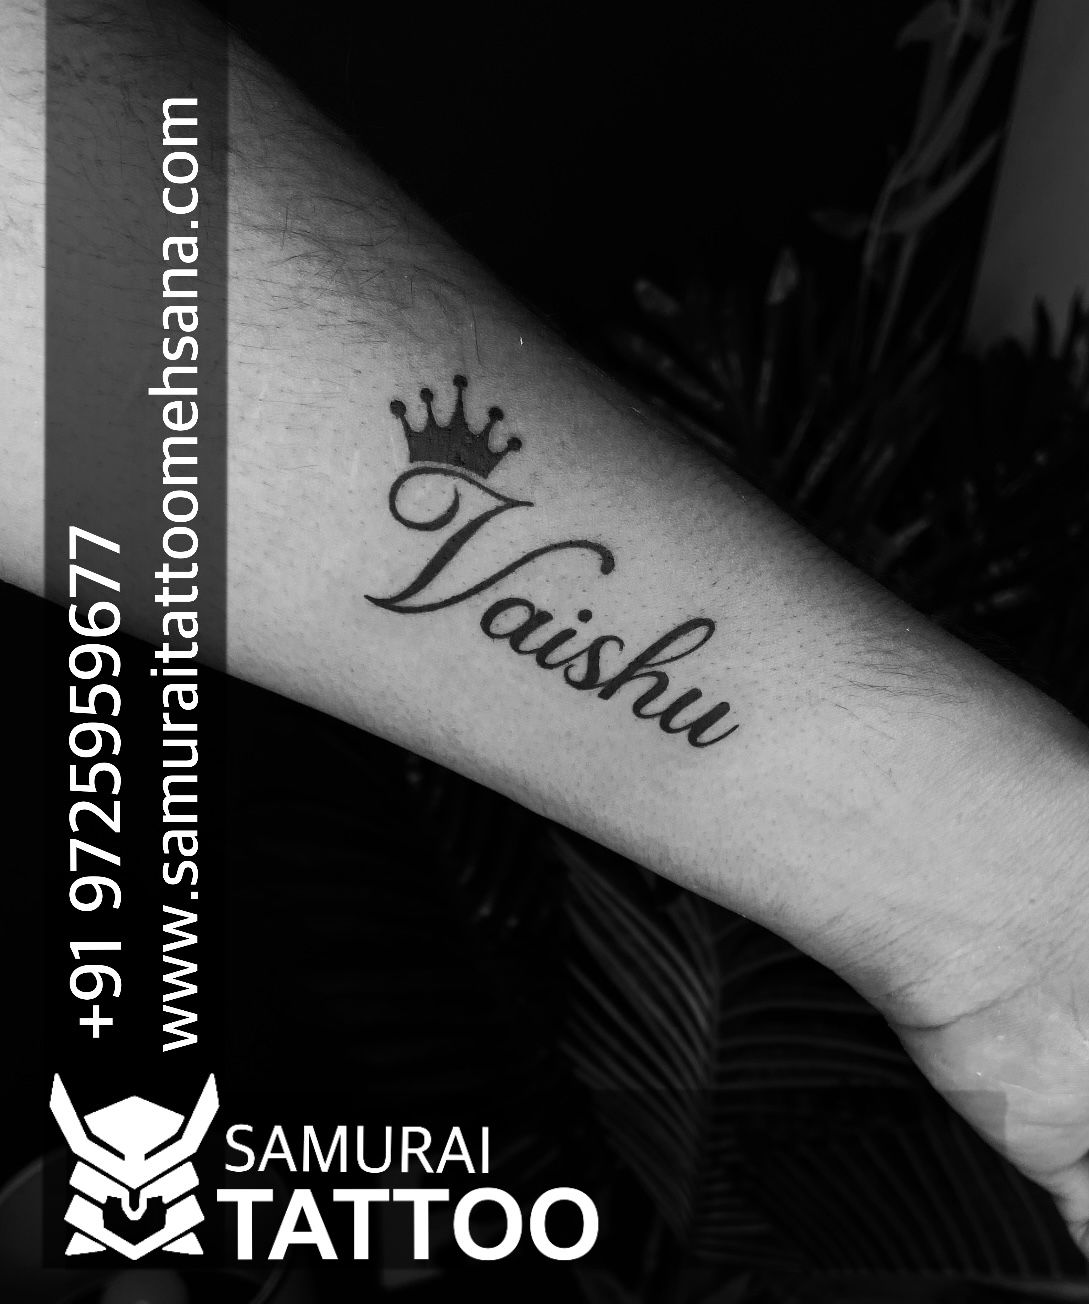 Discover 78 about vishnu name tattoo designs super cool  indaotaonec